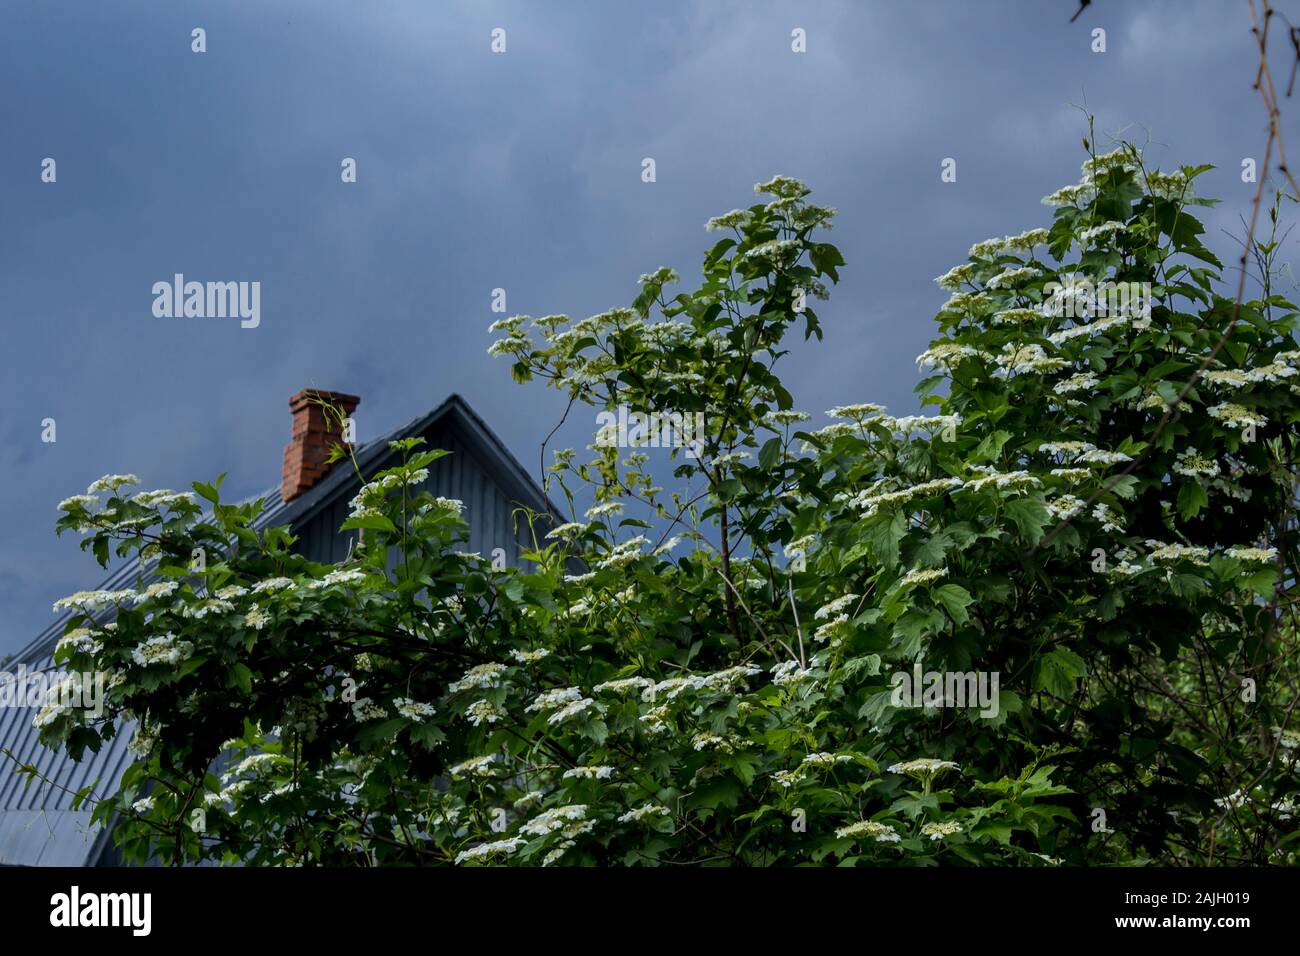 Frühling im Dorf. Frische grüne Laub und weissen Kirschblüten auf dem Strauch. ein Holzhaus, einen gemauerten Schornstein und einem stürmischen Himmel im Hintergrund. Stockfoto